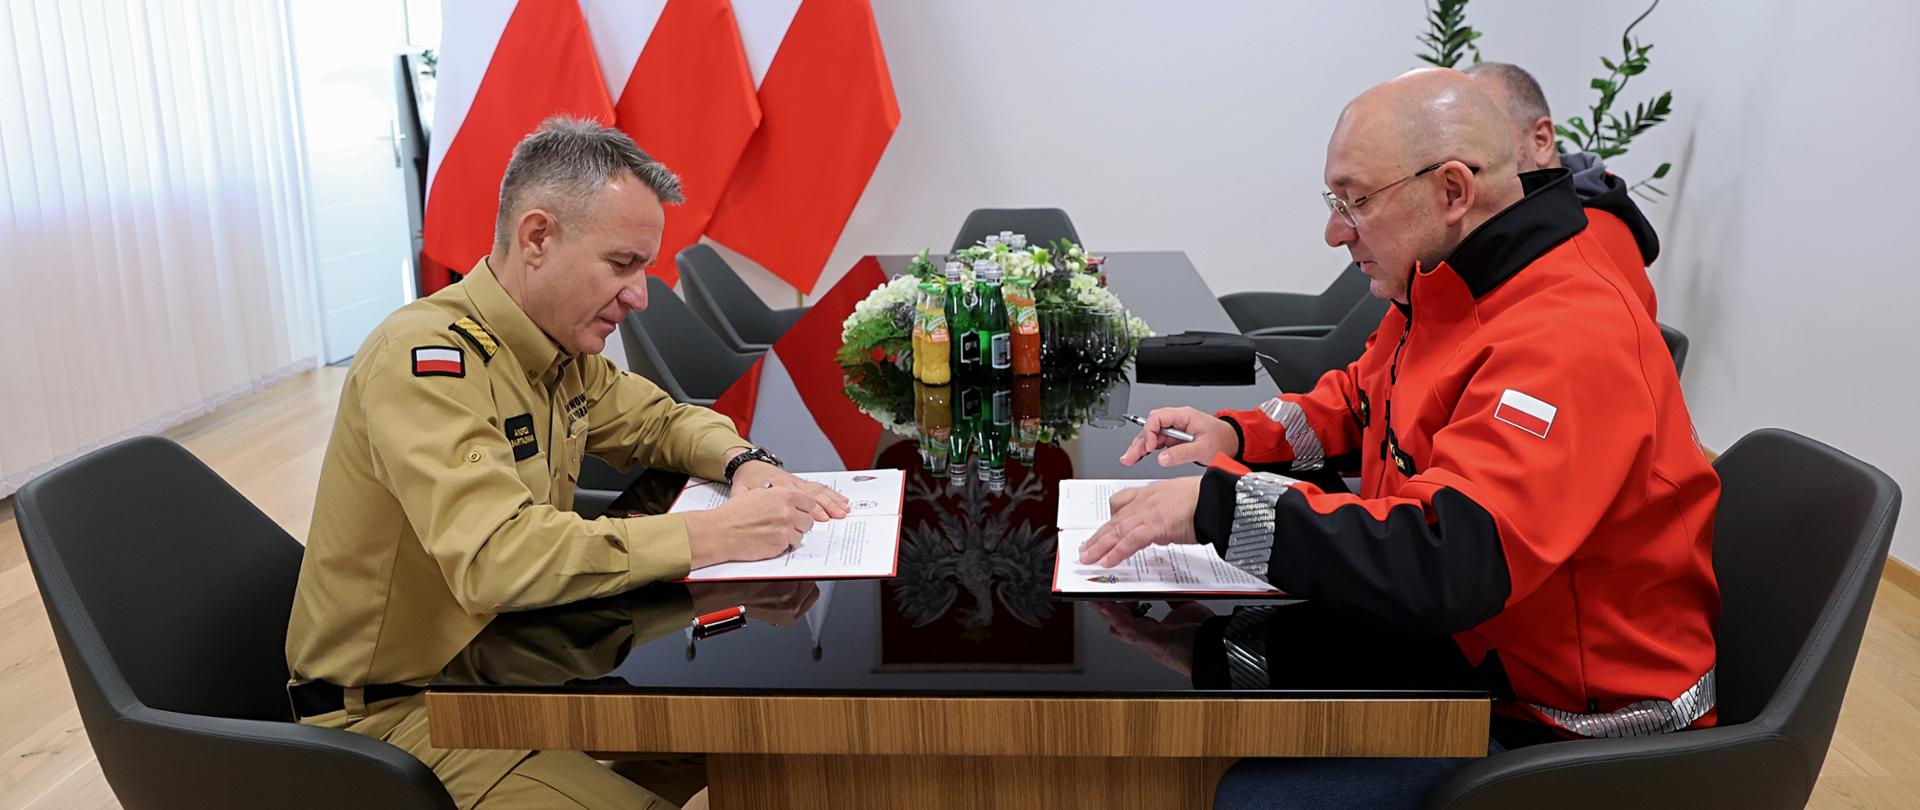 Komendant główny PSP w umundurowaniu służbowym w kolorze piaskowym i dyrektor LPR w ubraniu w kolorze czerwonym z napisem: Lotnicze Pogotowie Ratunkowe siedzący przy stole w trakcie podpisywania porozumienia. 